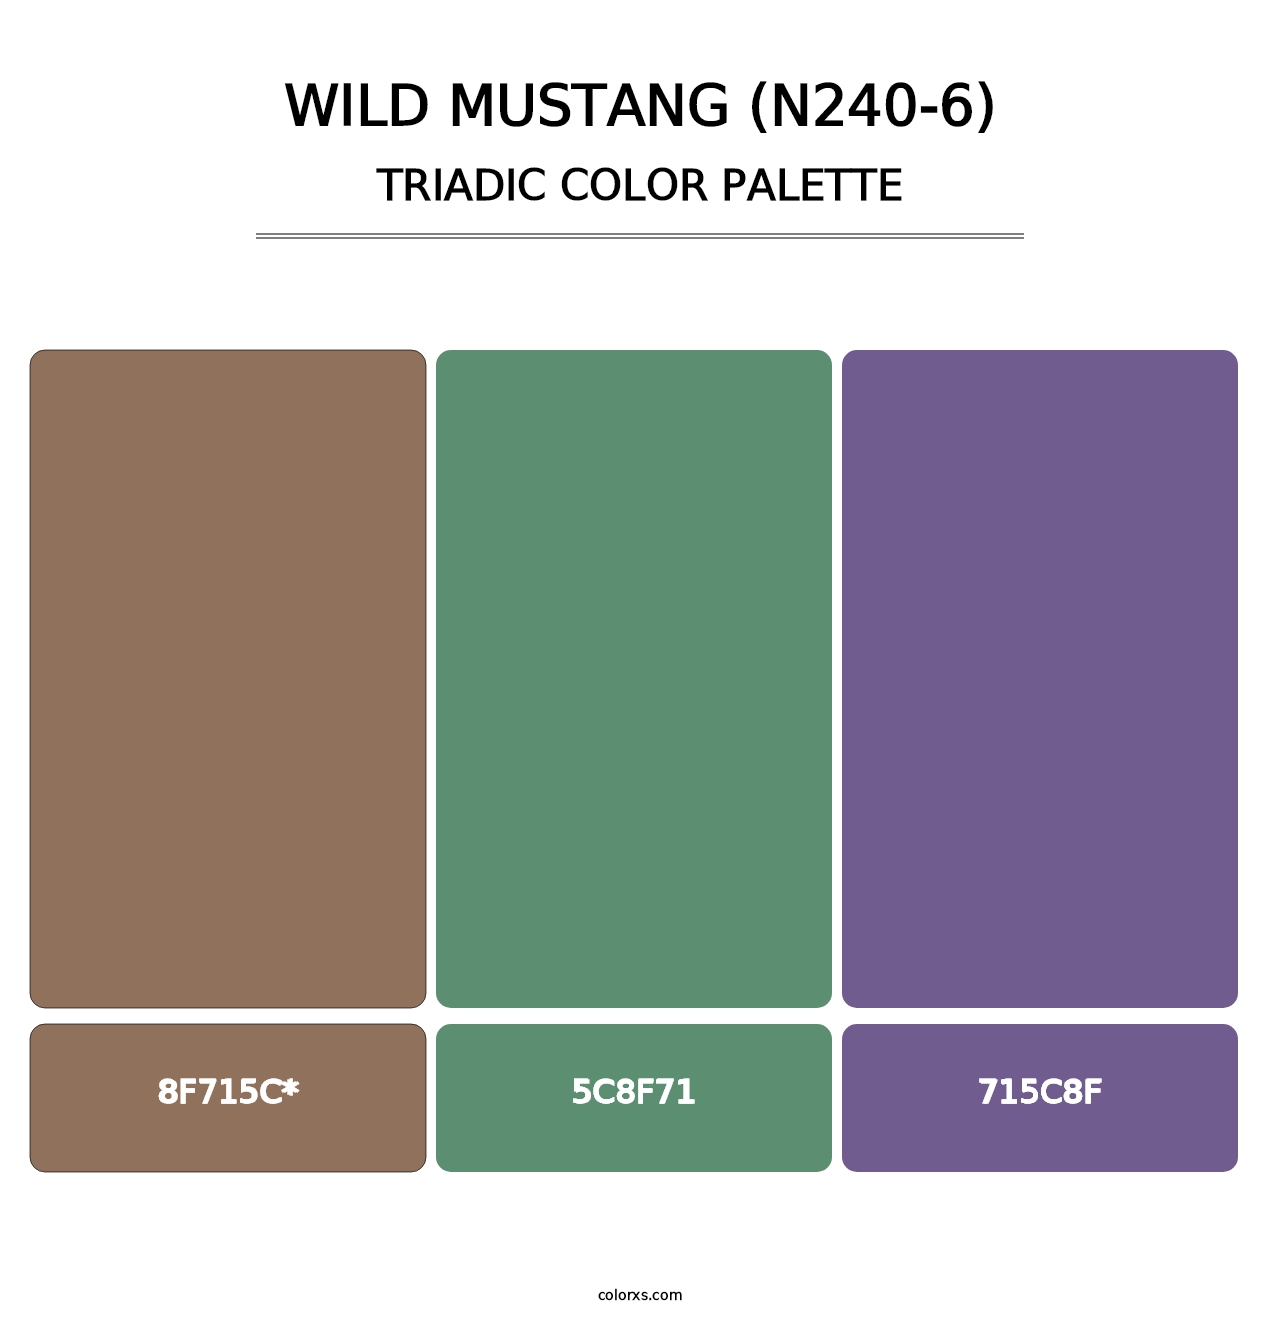 Wild Mustang (N240-6) - Triadic Color Palette